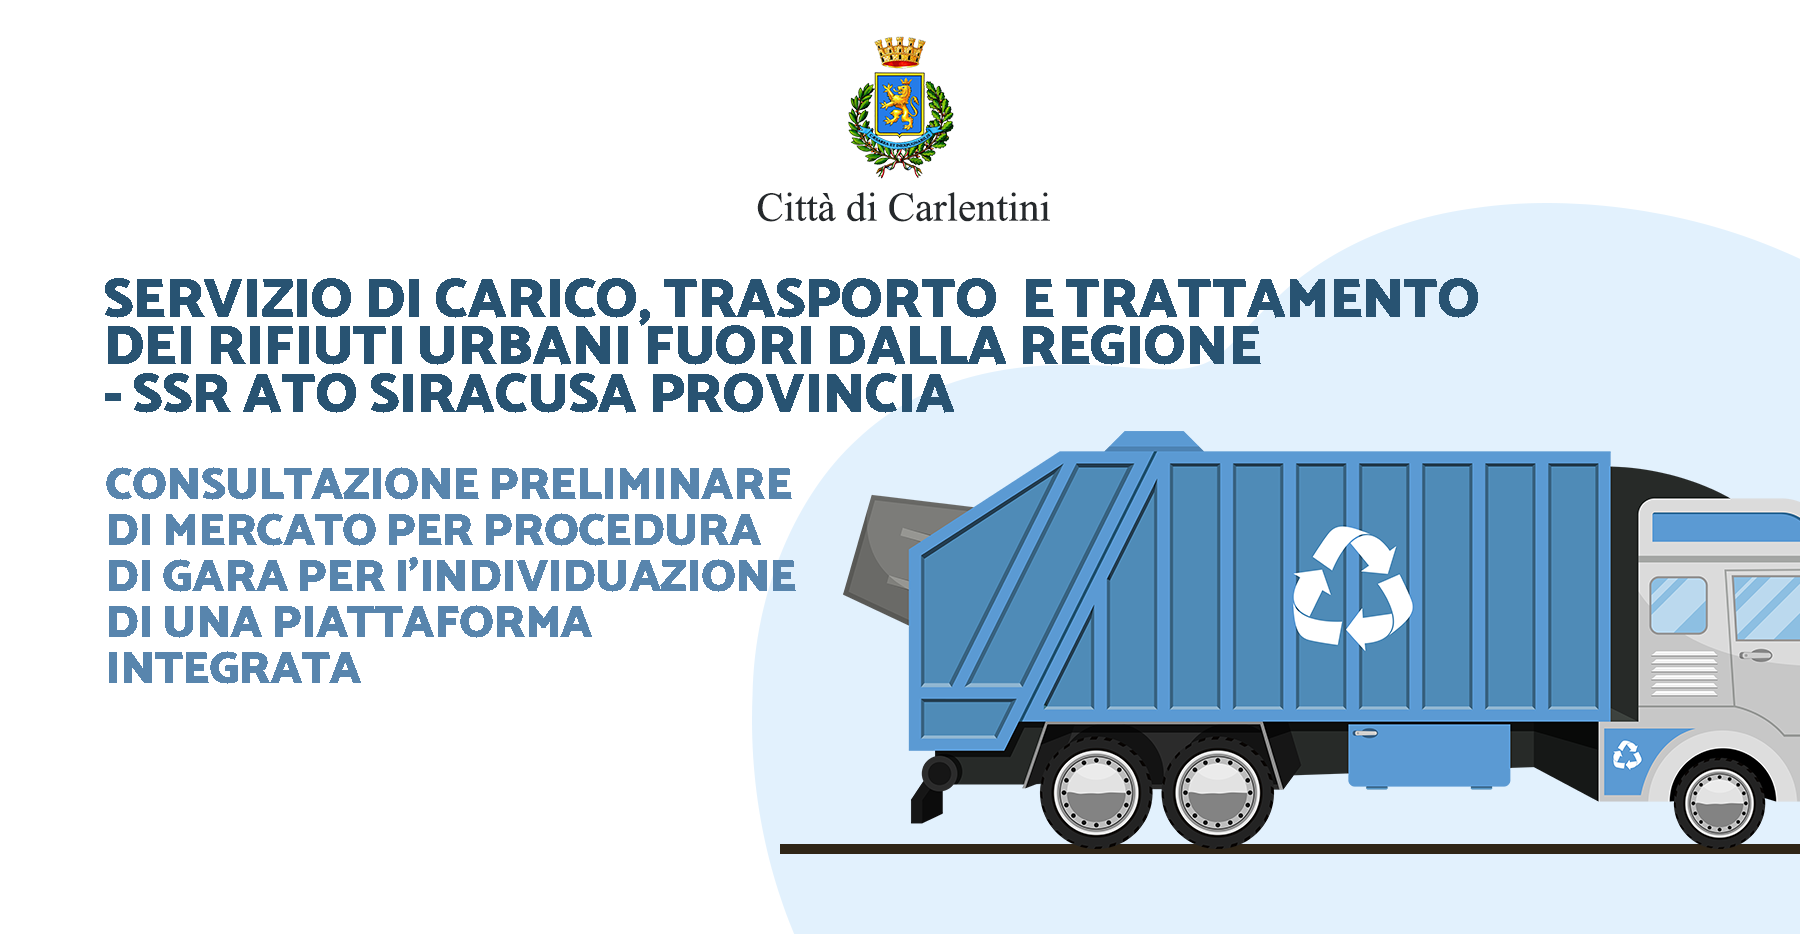 SSR ATO Siracusa Provincia – Servizio di carico, trasporto e trattamento dei rifiuti urbani fuori dalla Regione: consultazione di mercato